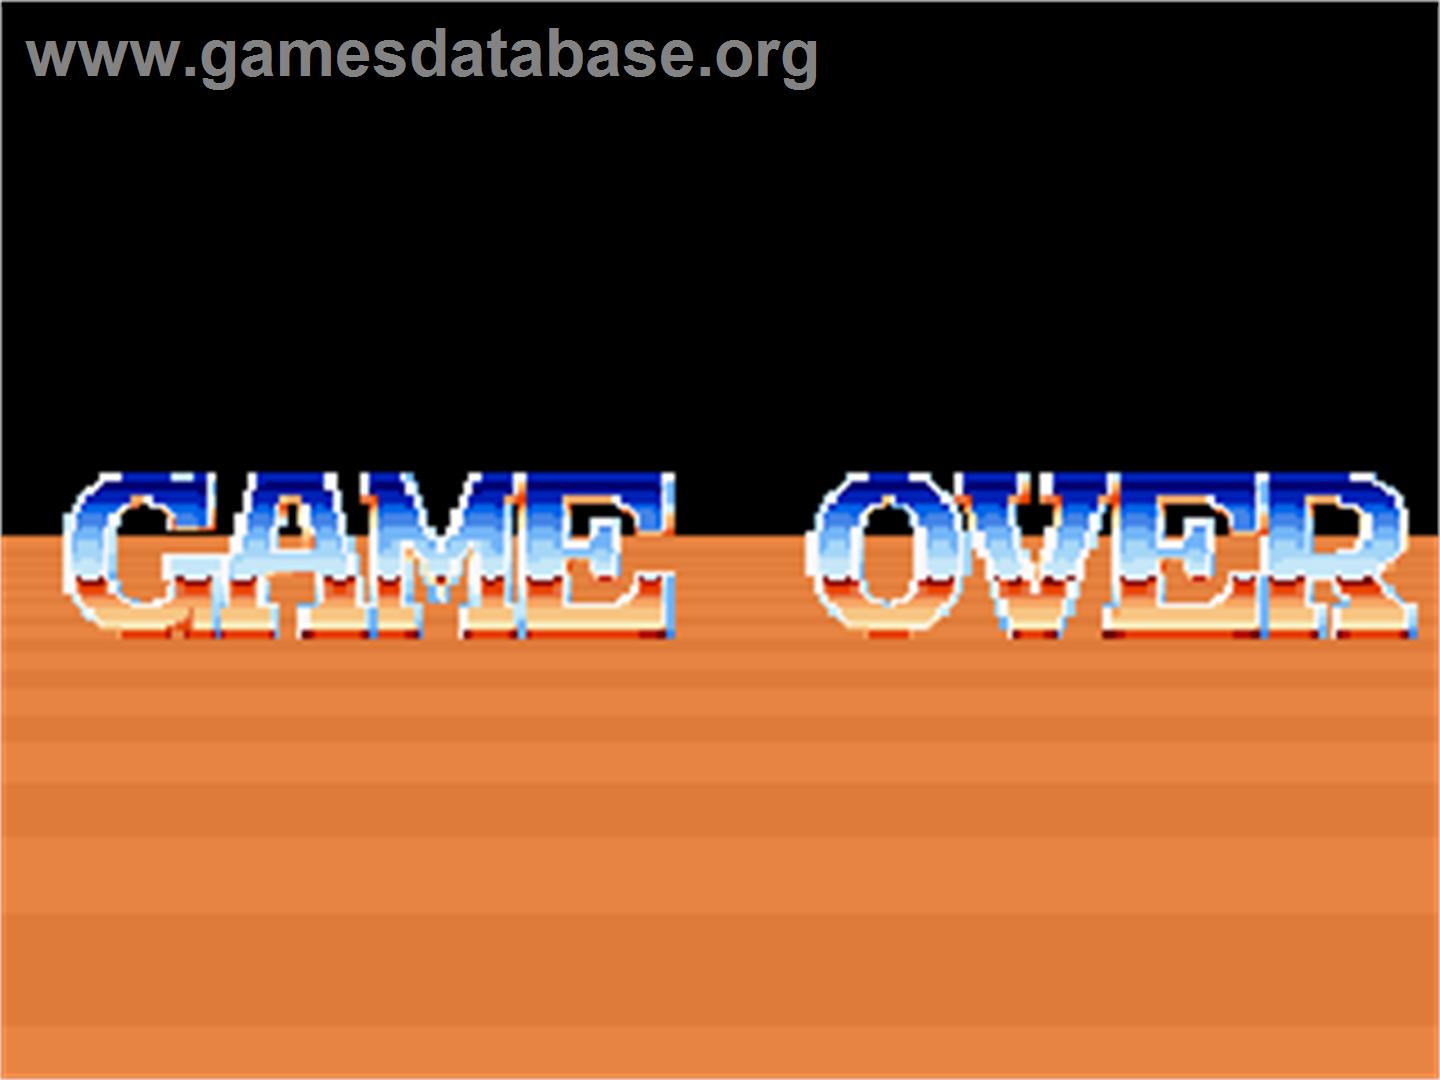 Double Axle - Arcade - Artwork - Game Over Screen